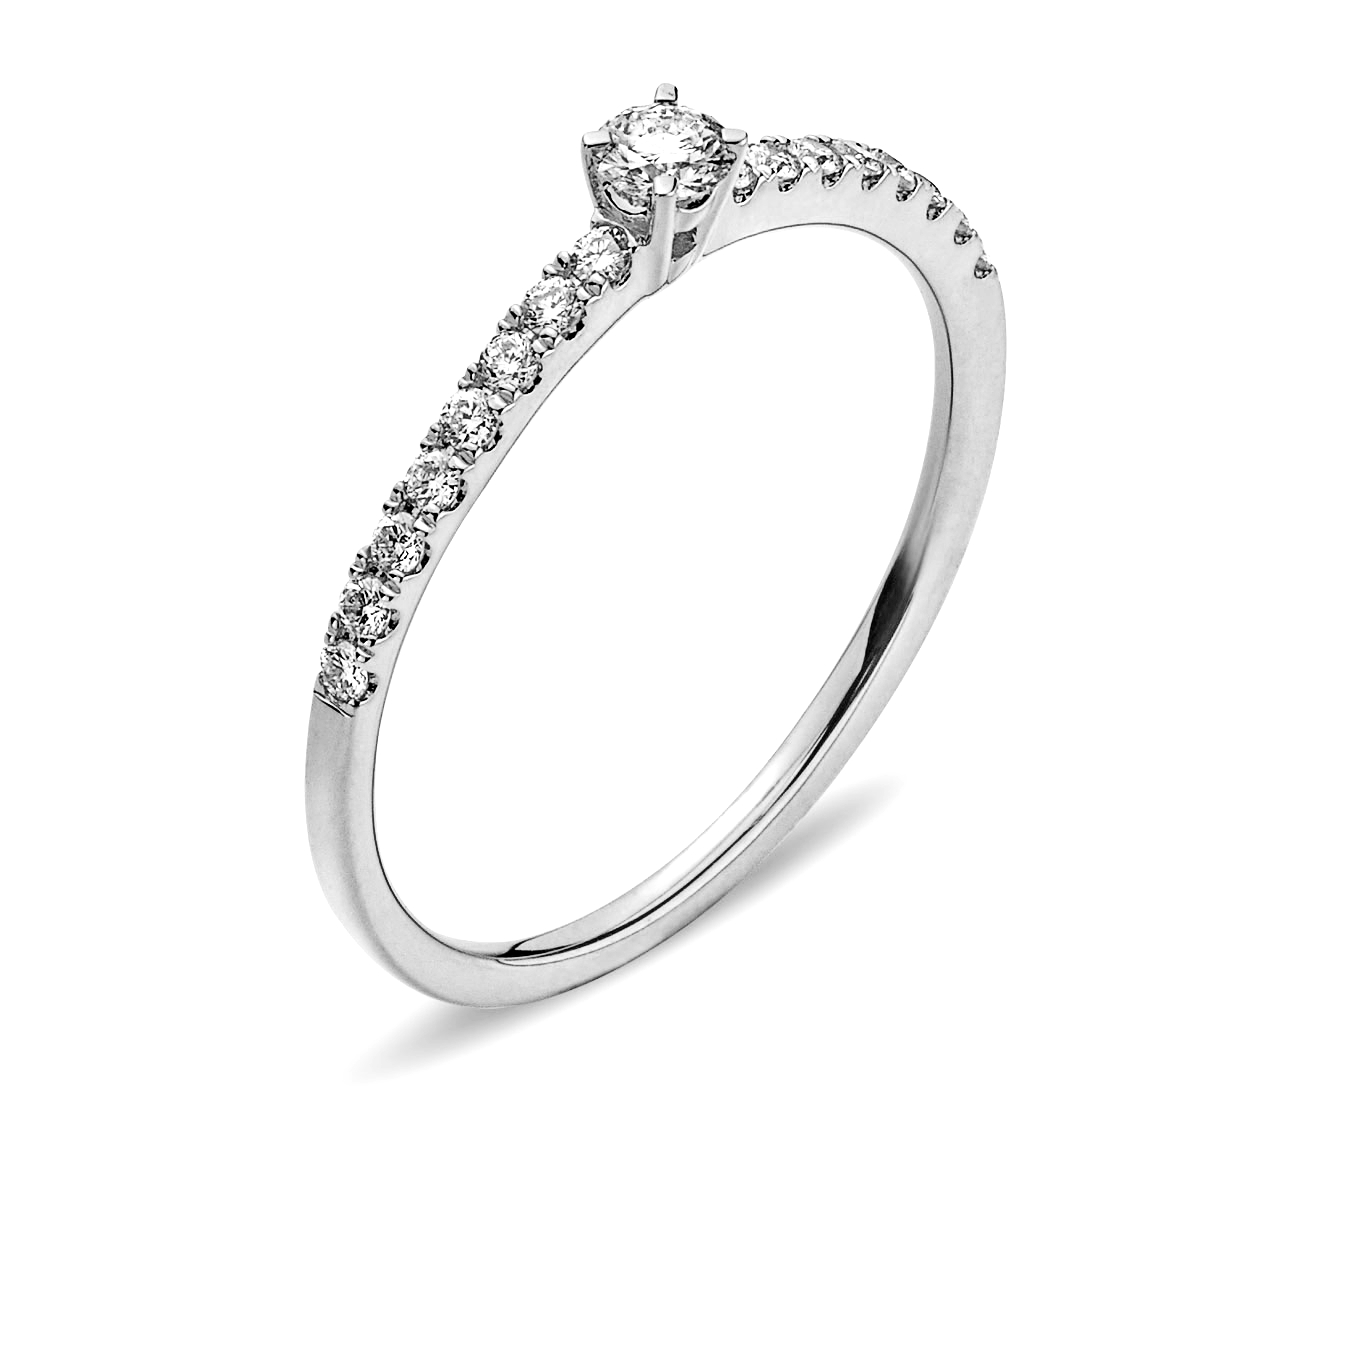 AURONOS Prestige Ring white gold 18K diamonds 0.49ct